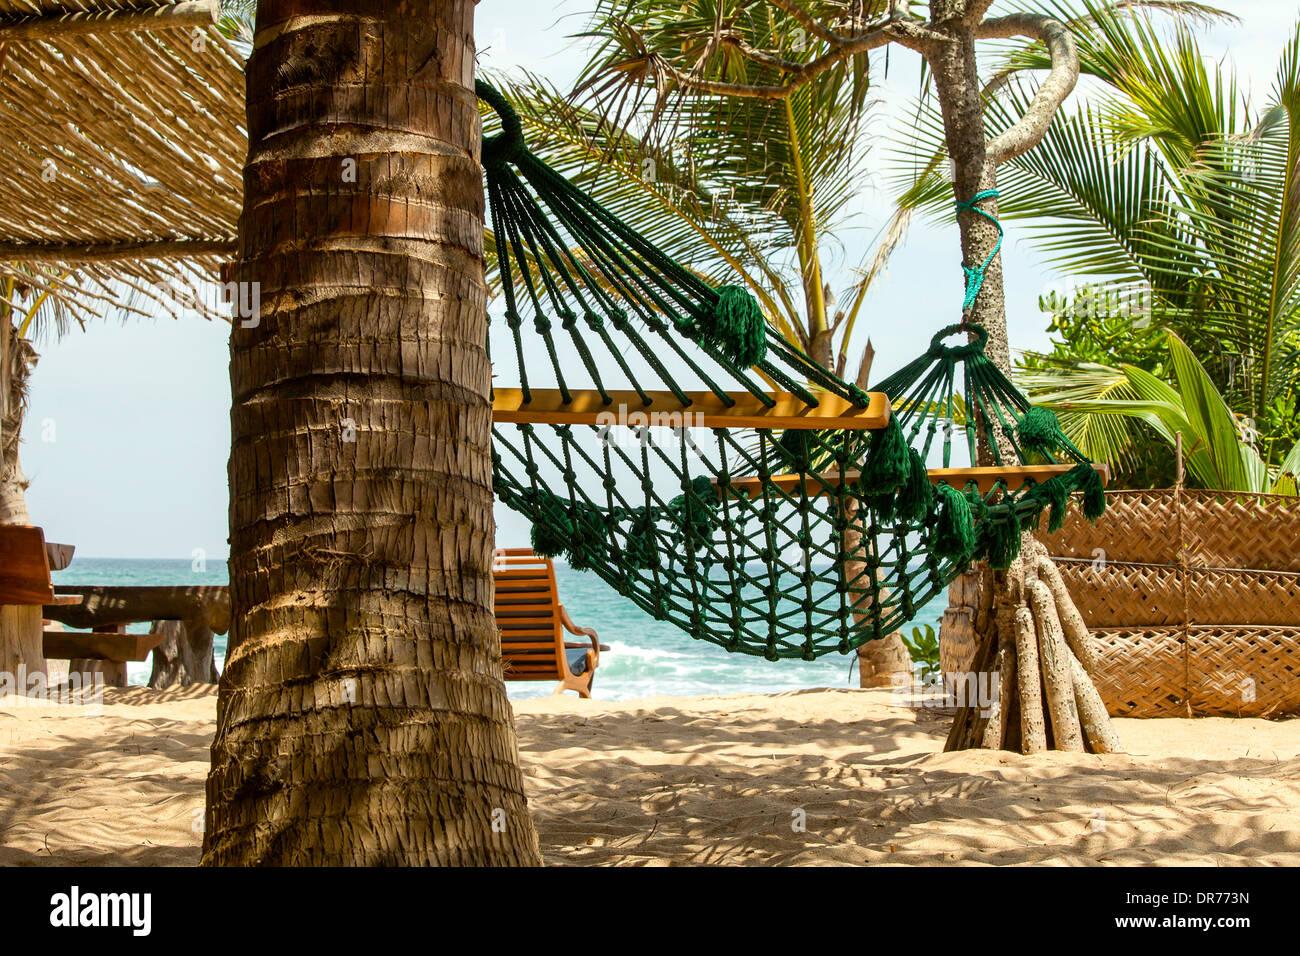 A hammock on the beach Stock Photo